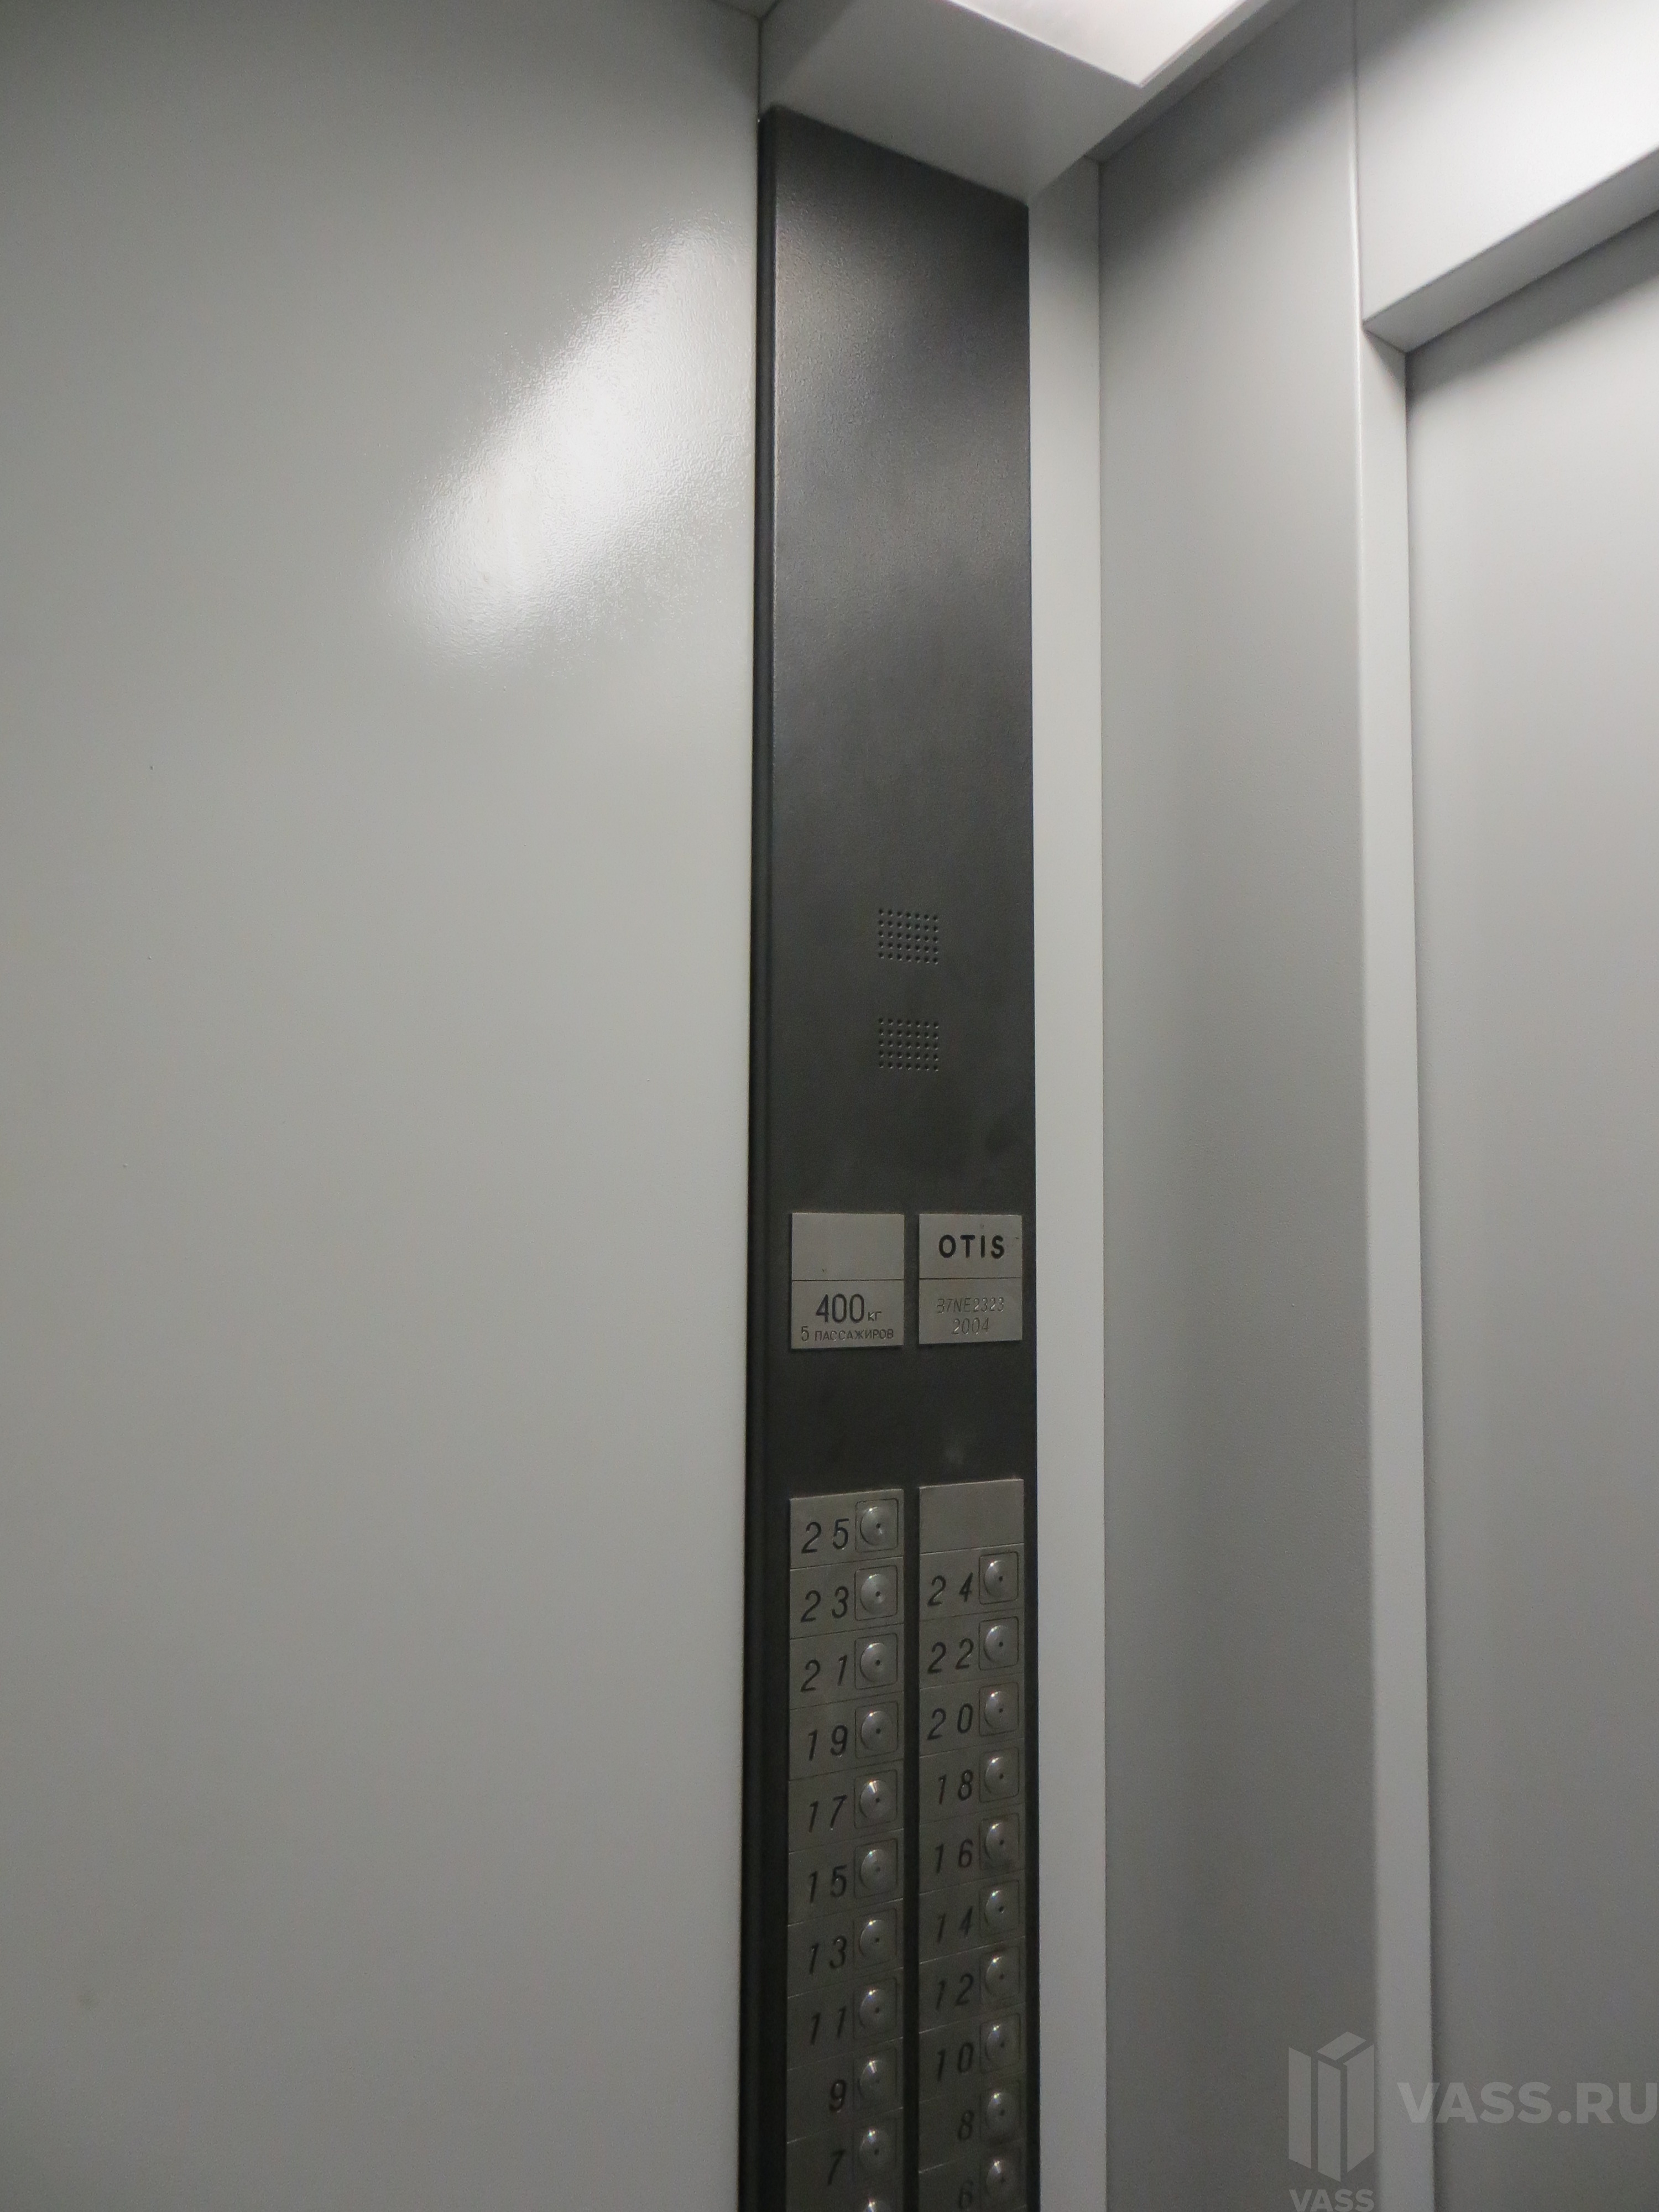 Окрашивание лифтовой кабины